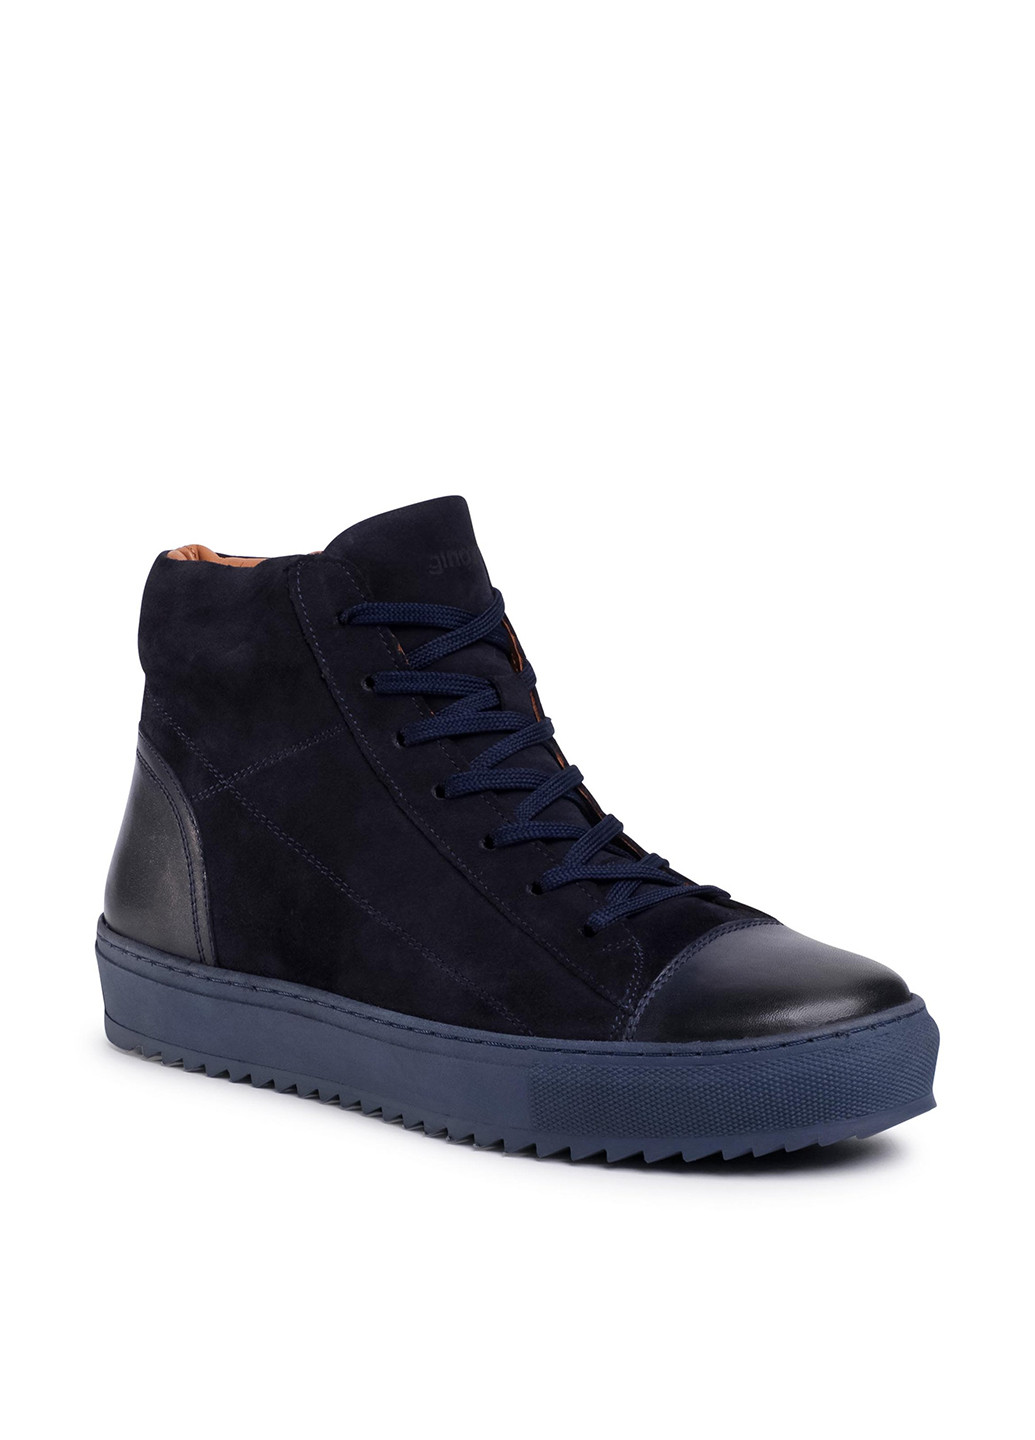 Темно-синие осенние черевики gino rossi mi08-c798-800-01 Gino Rossi